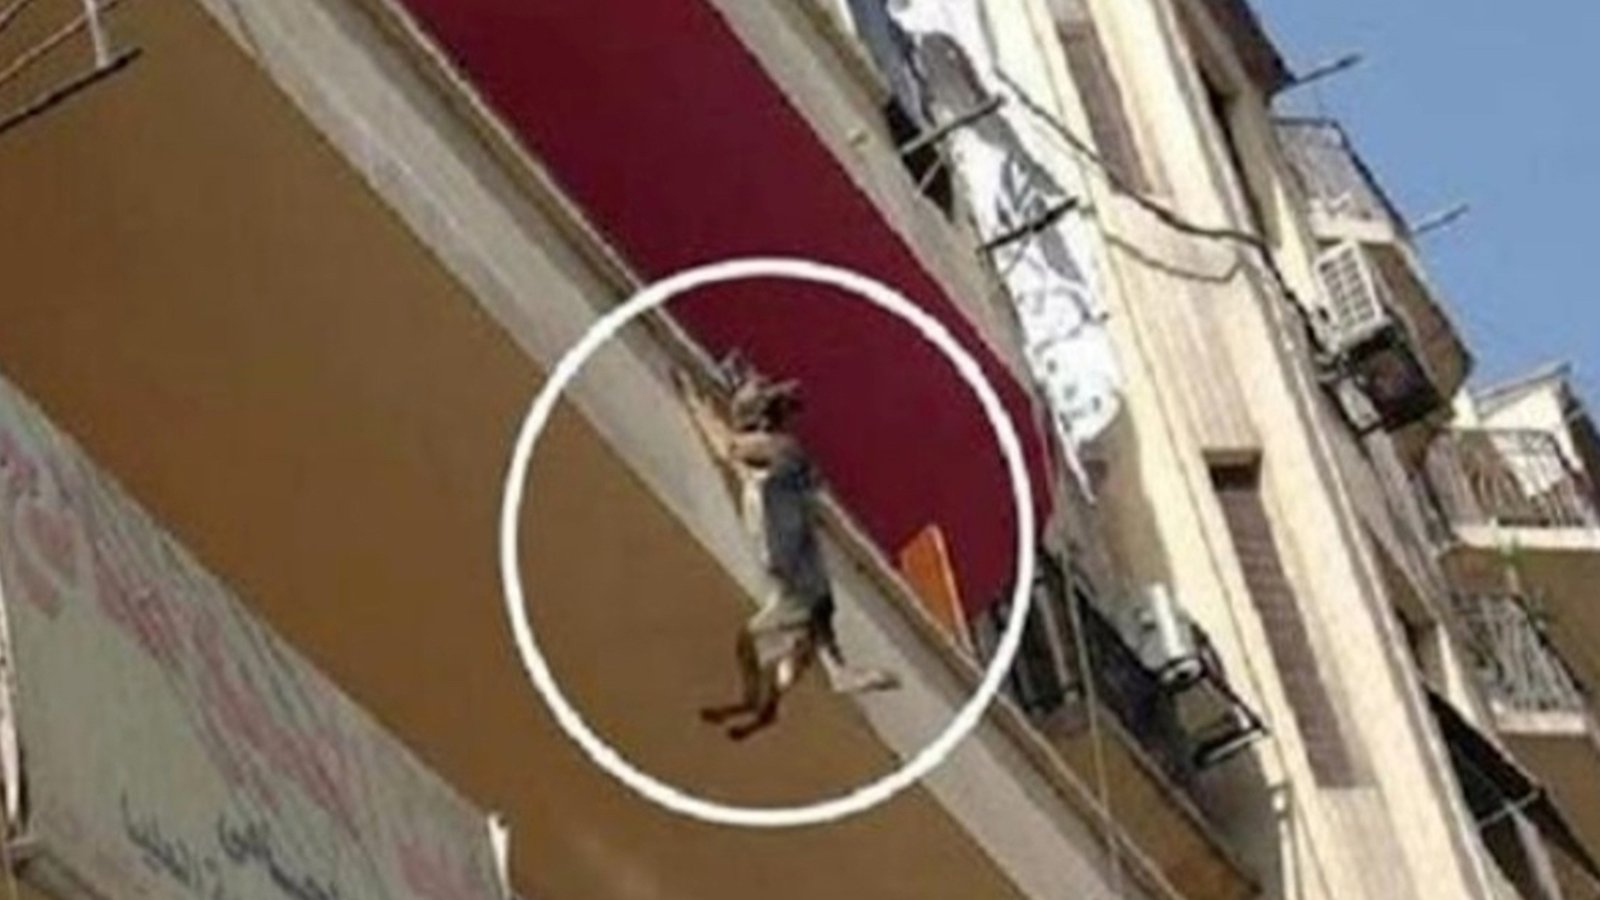 Des gens ont assisté à une scène incroyable: un chien pendu à un balcon